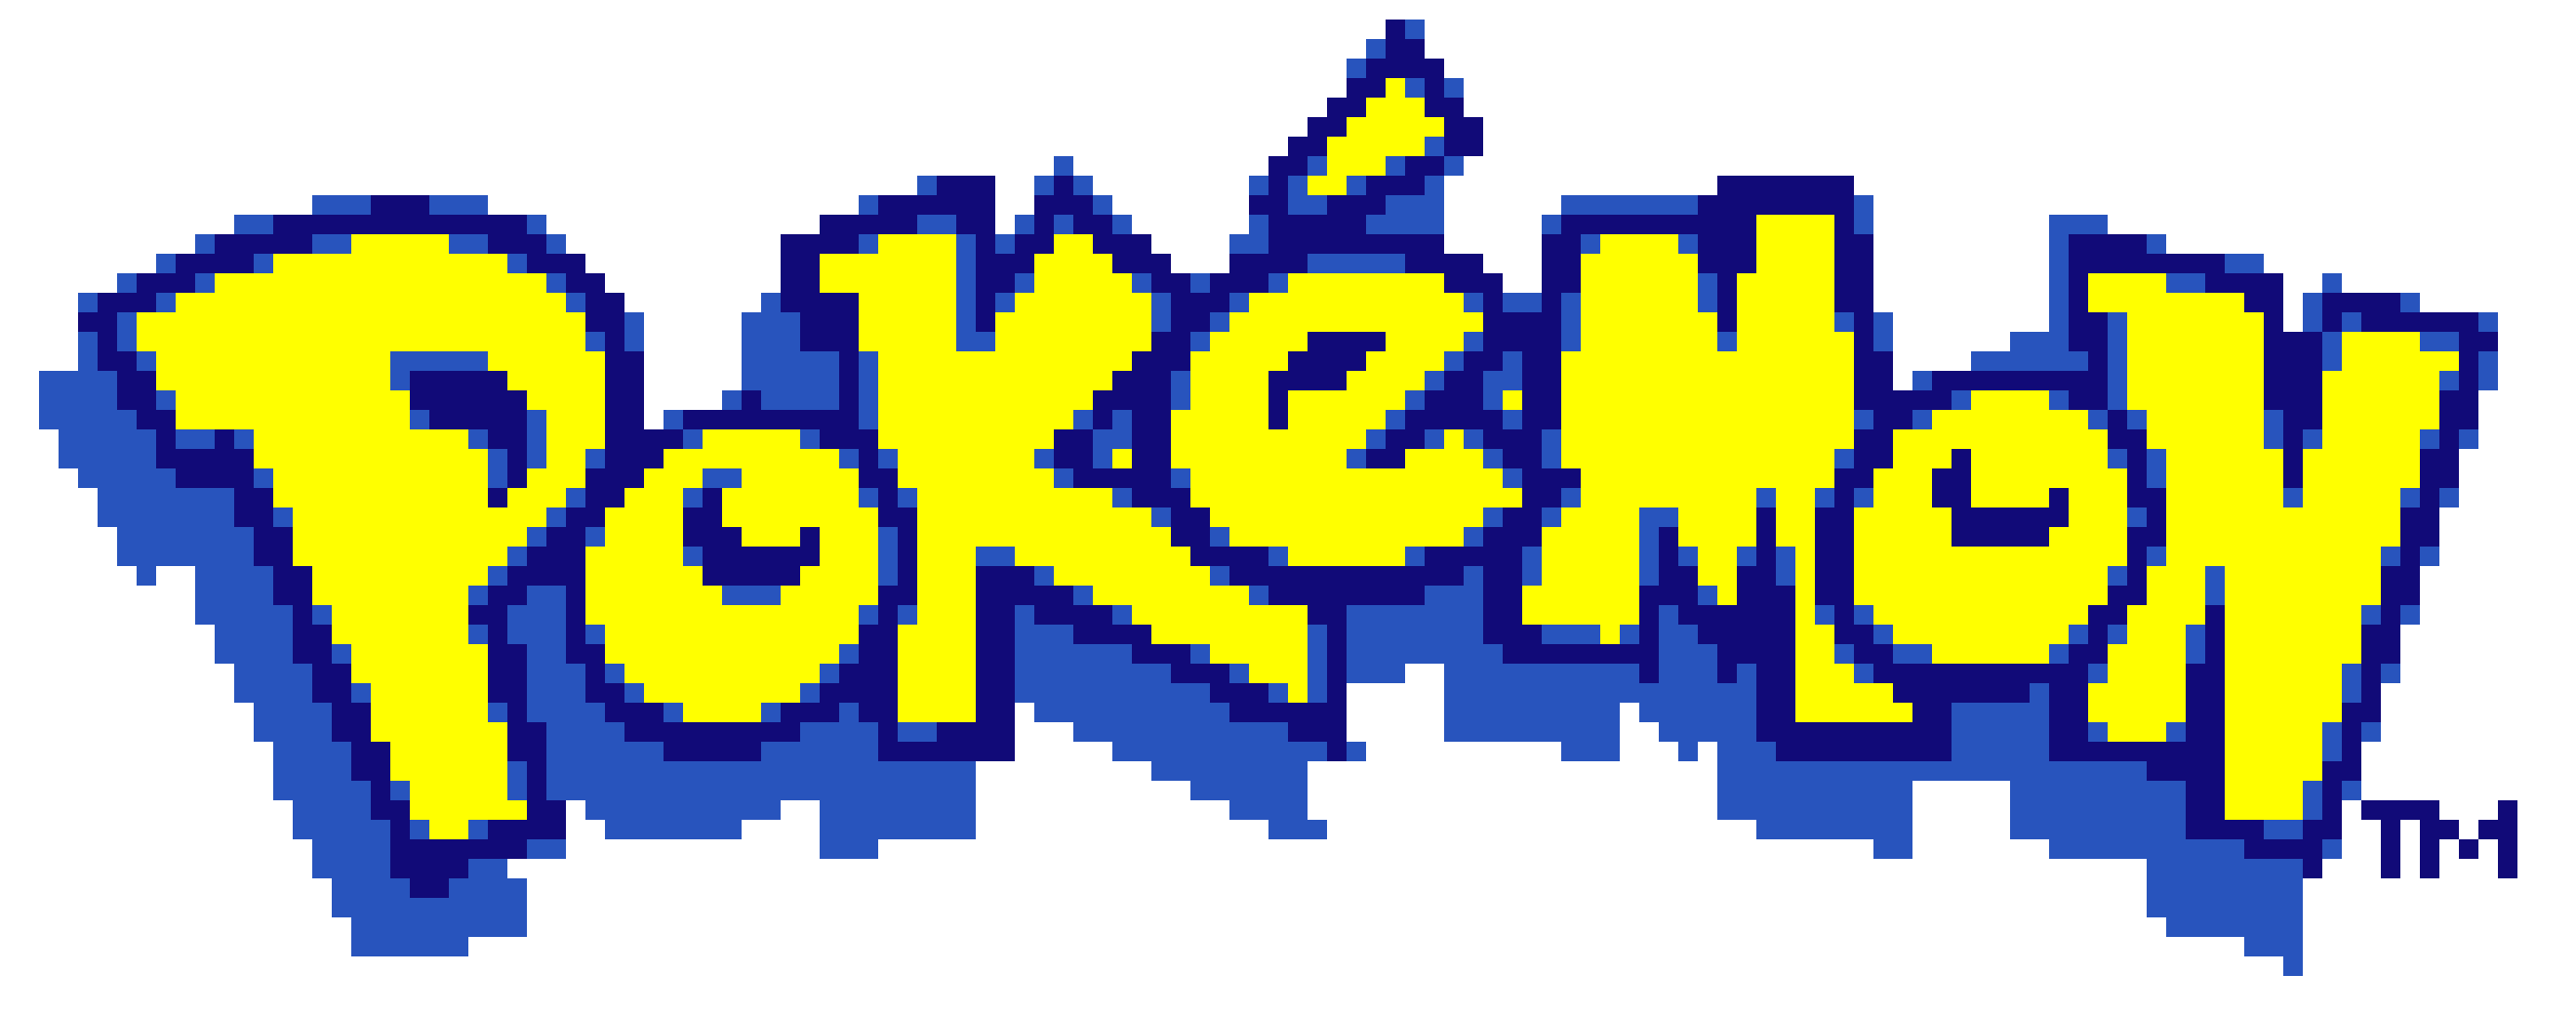 Pokemon Logo Png Photo - Poke